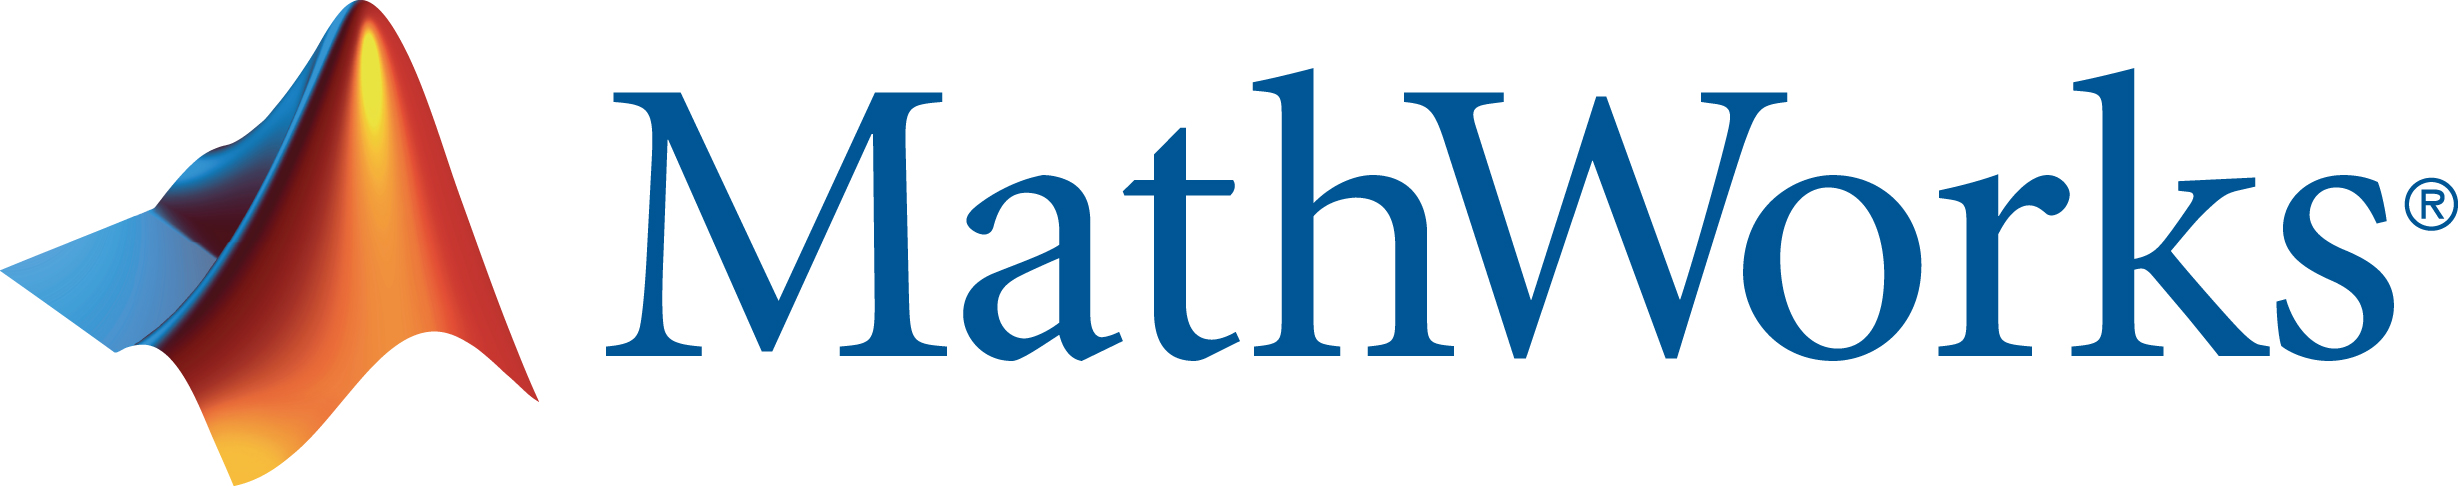 New-mathworks logo.jpg